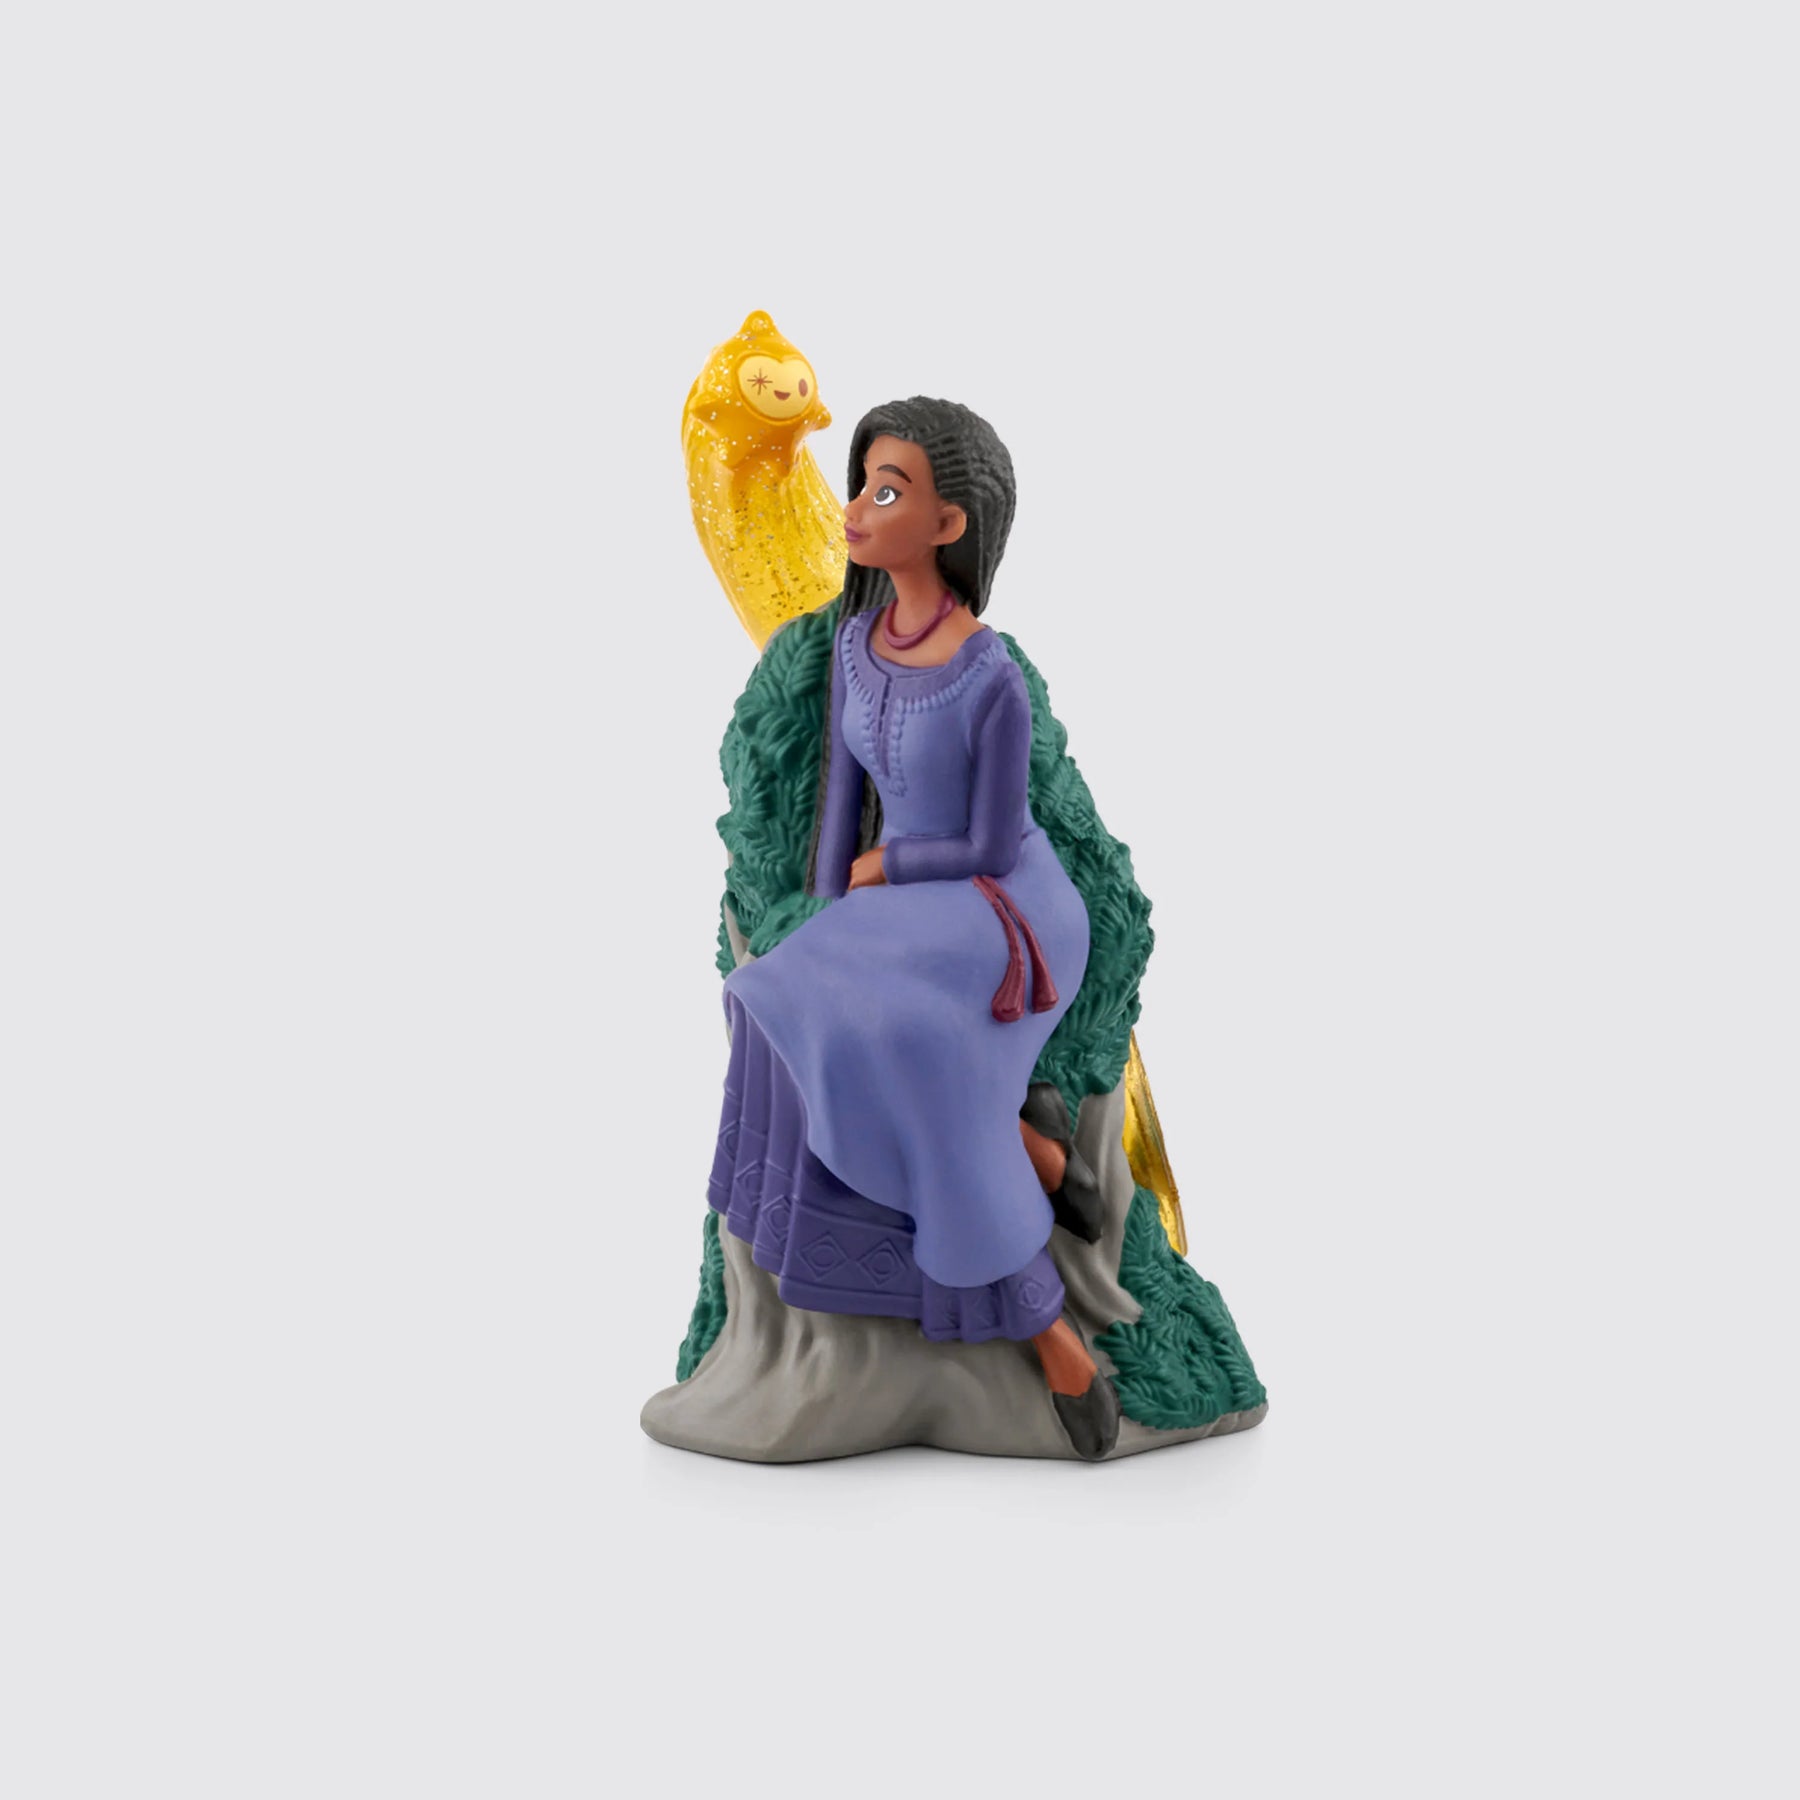 Tonies Disney Frozen ANNA Audiobook Character Figurine for